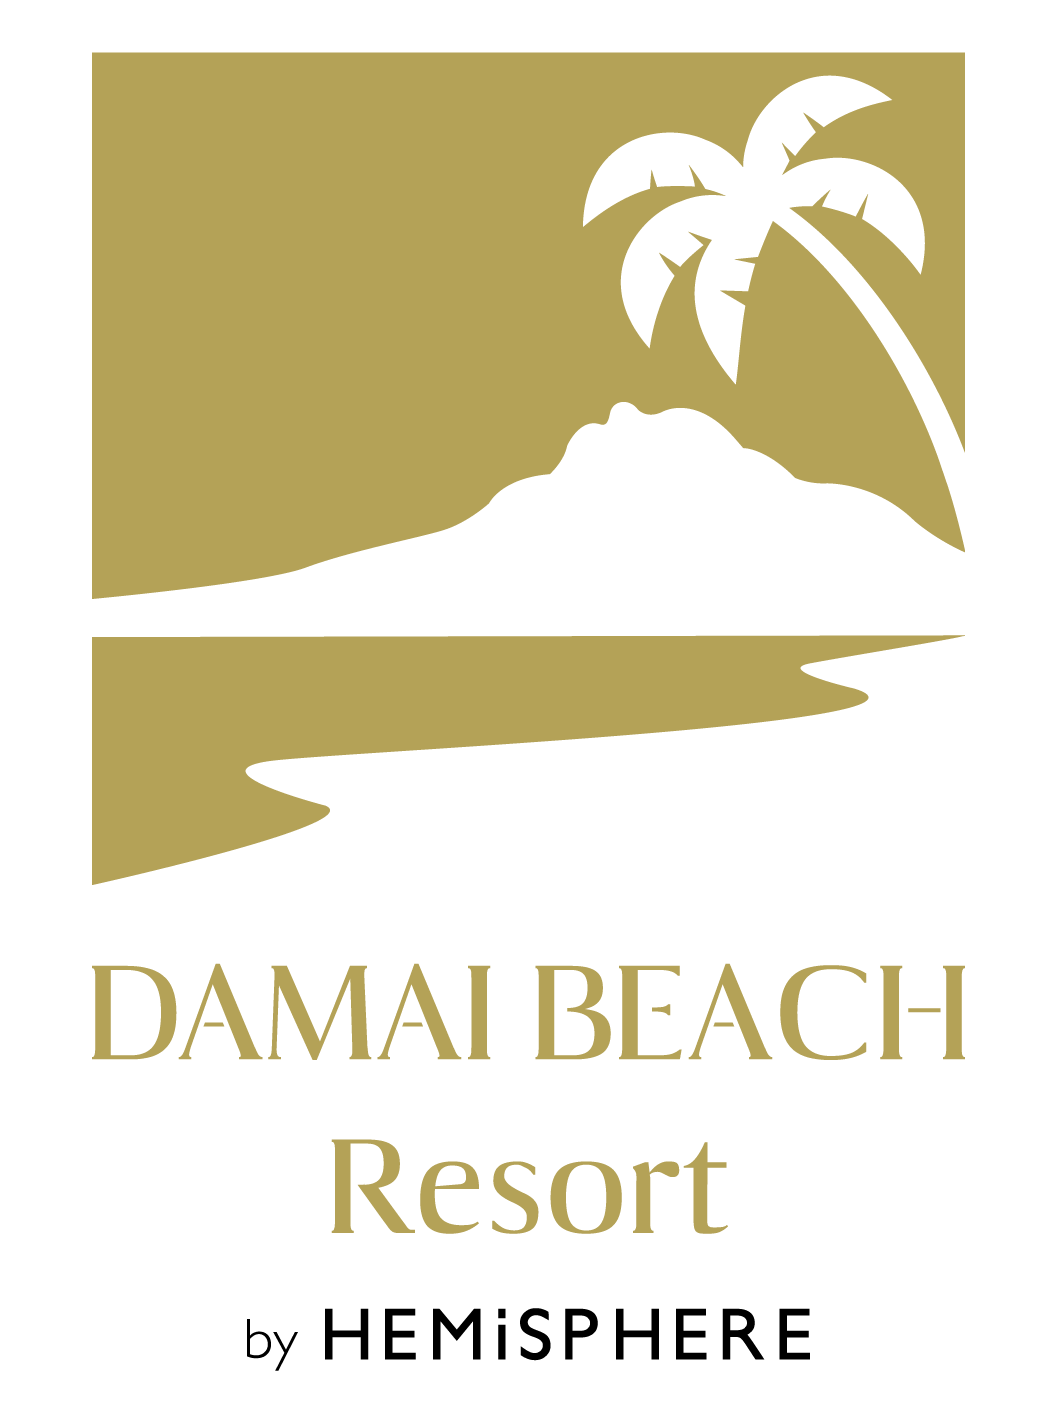 Damai beach